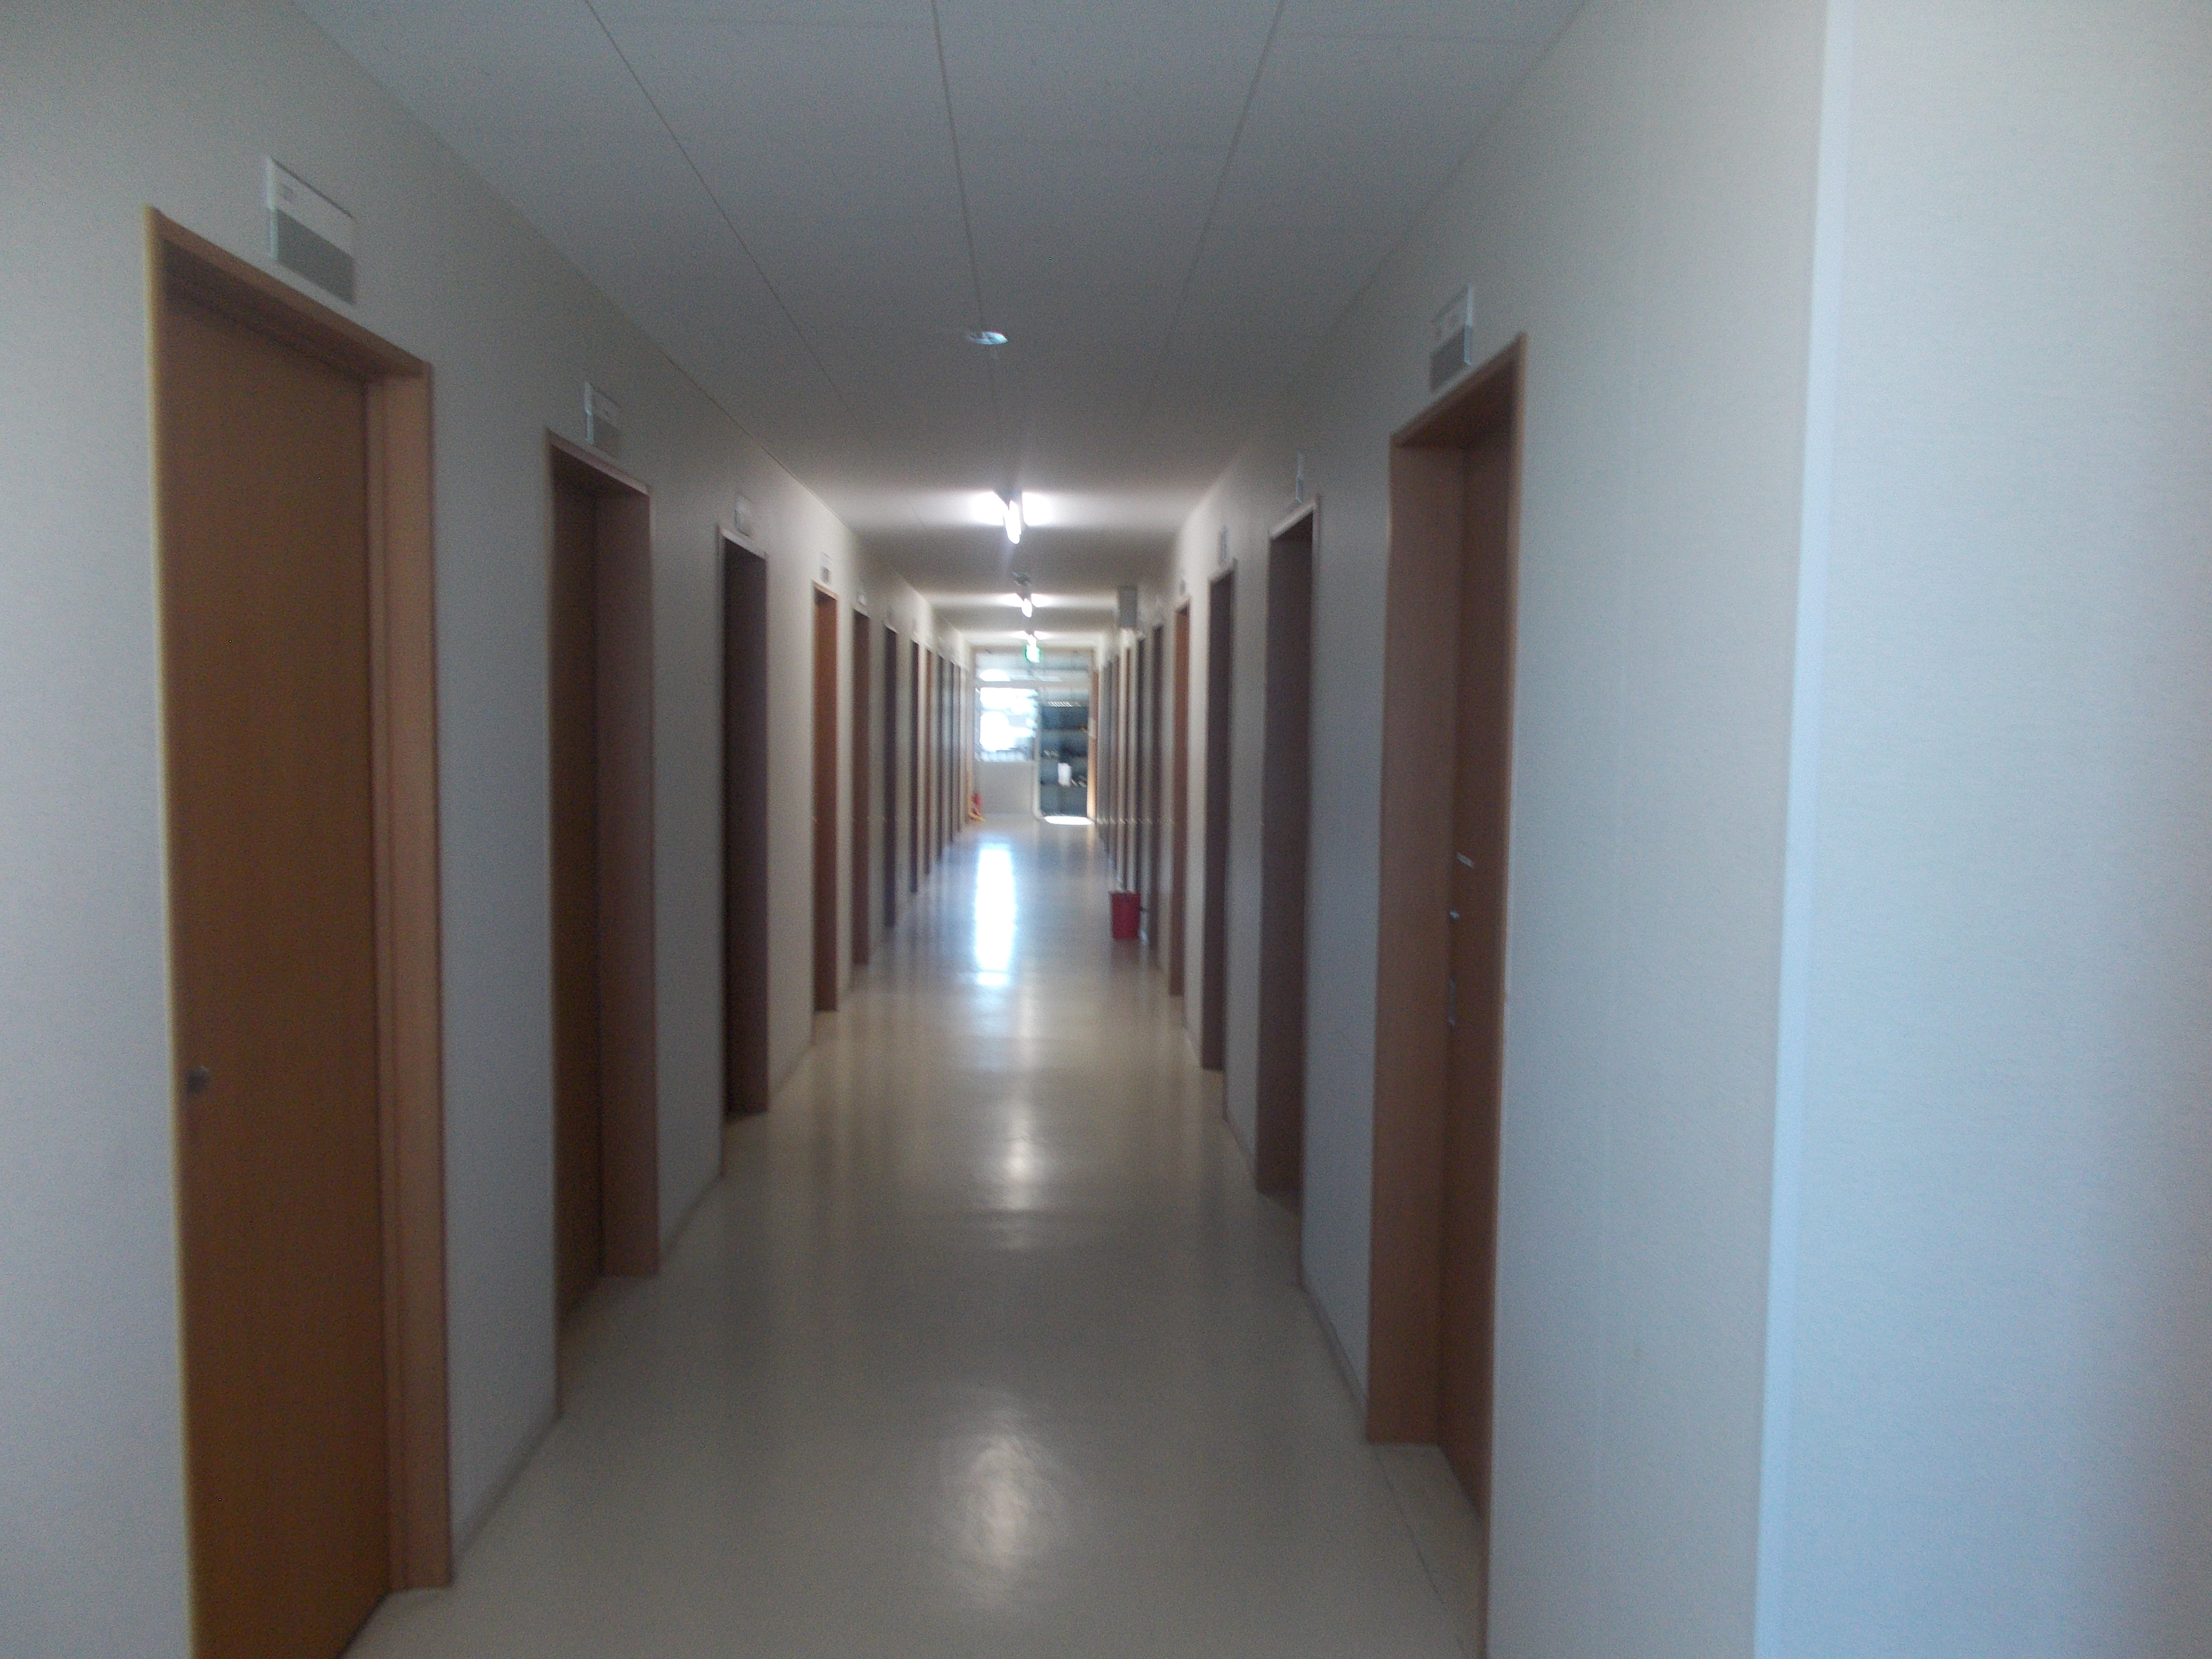 施設2階の明るい渡り廊下